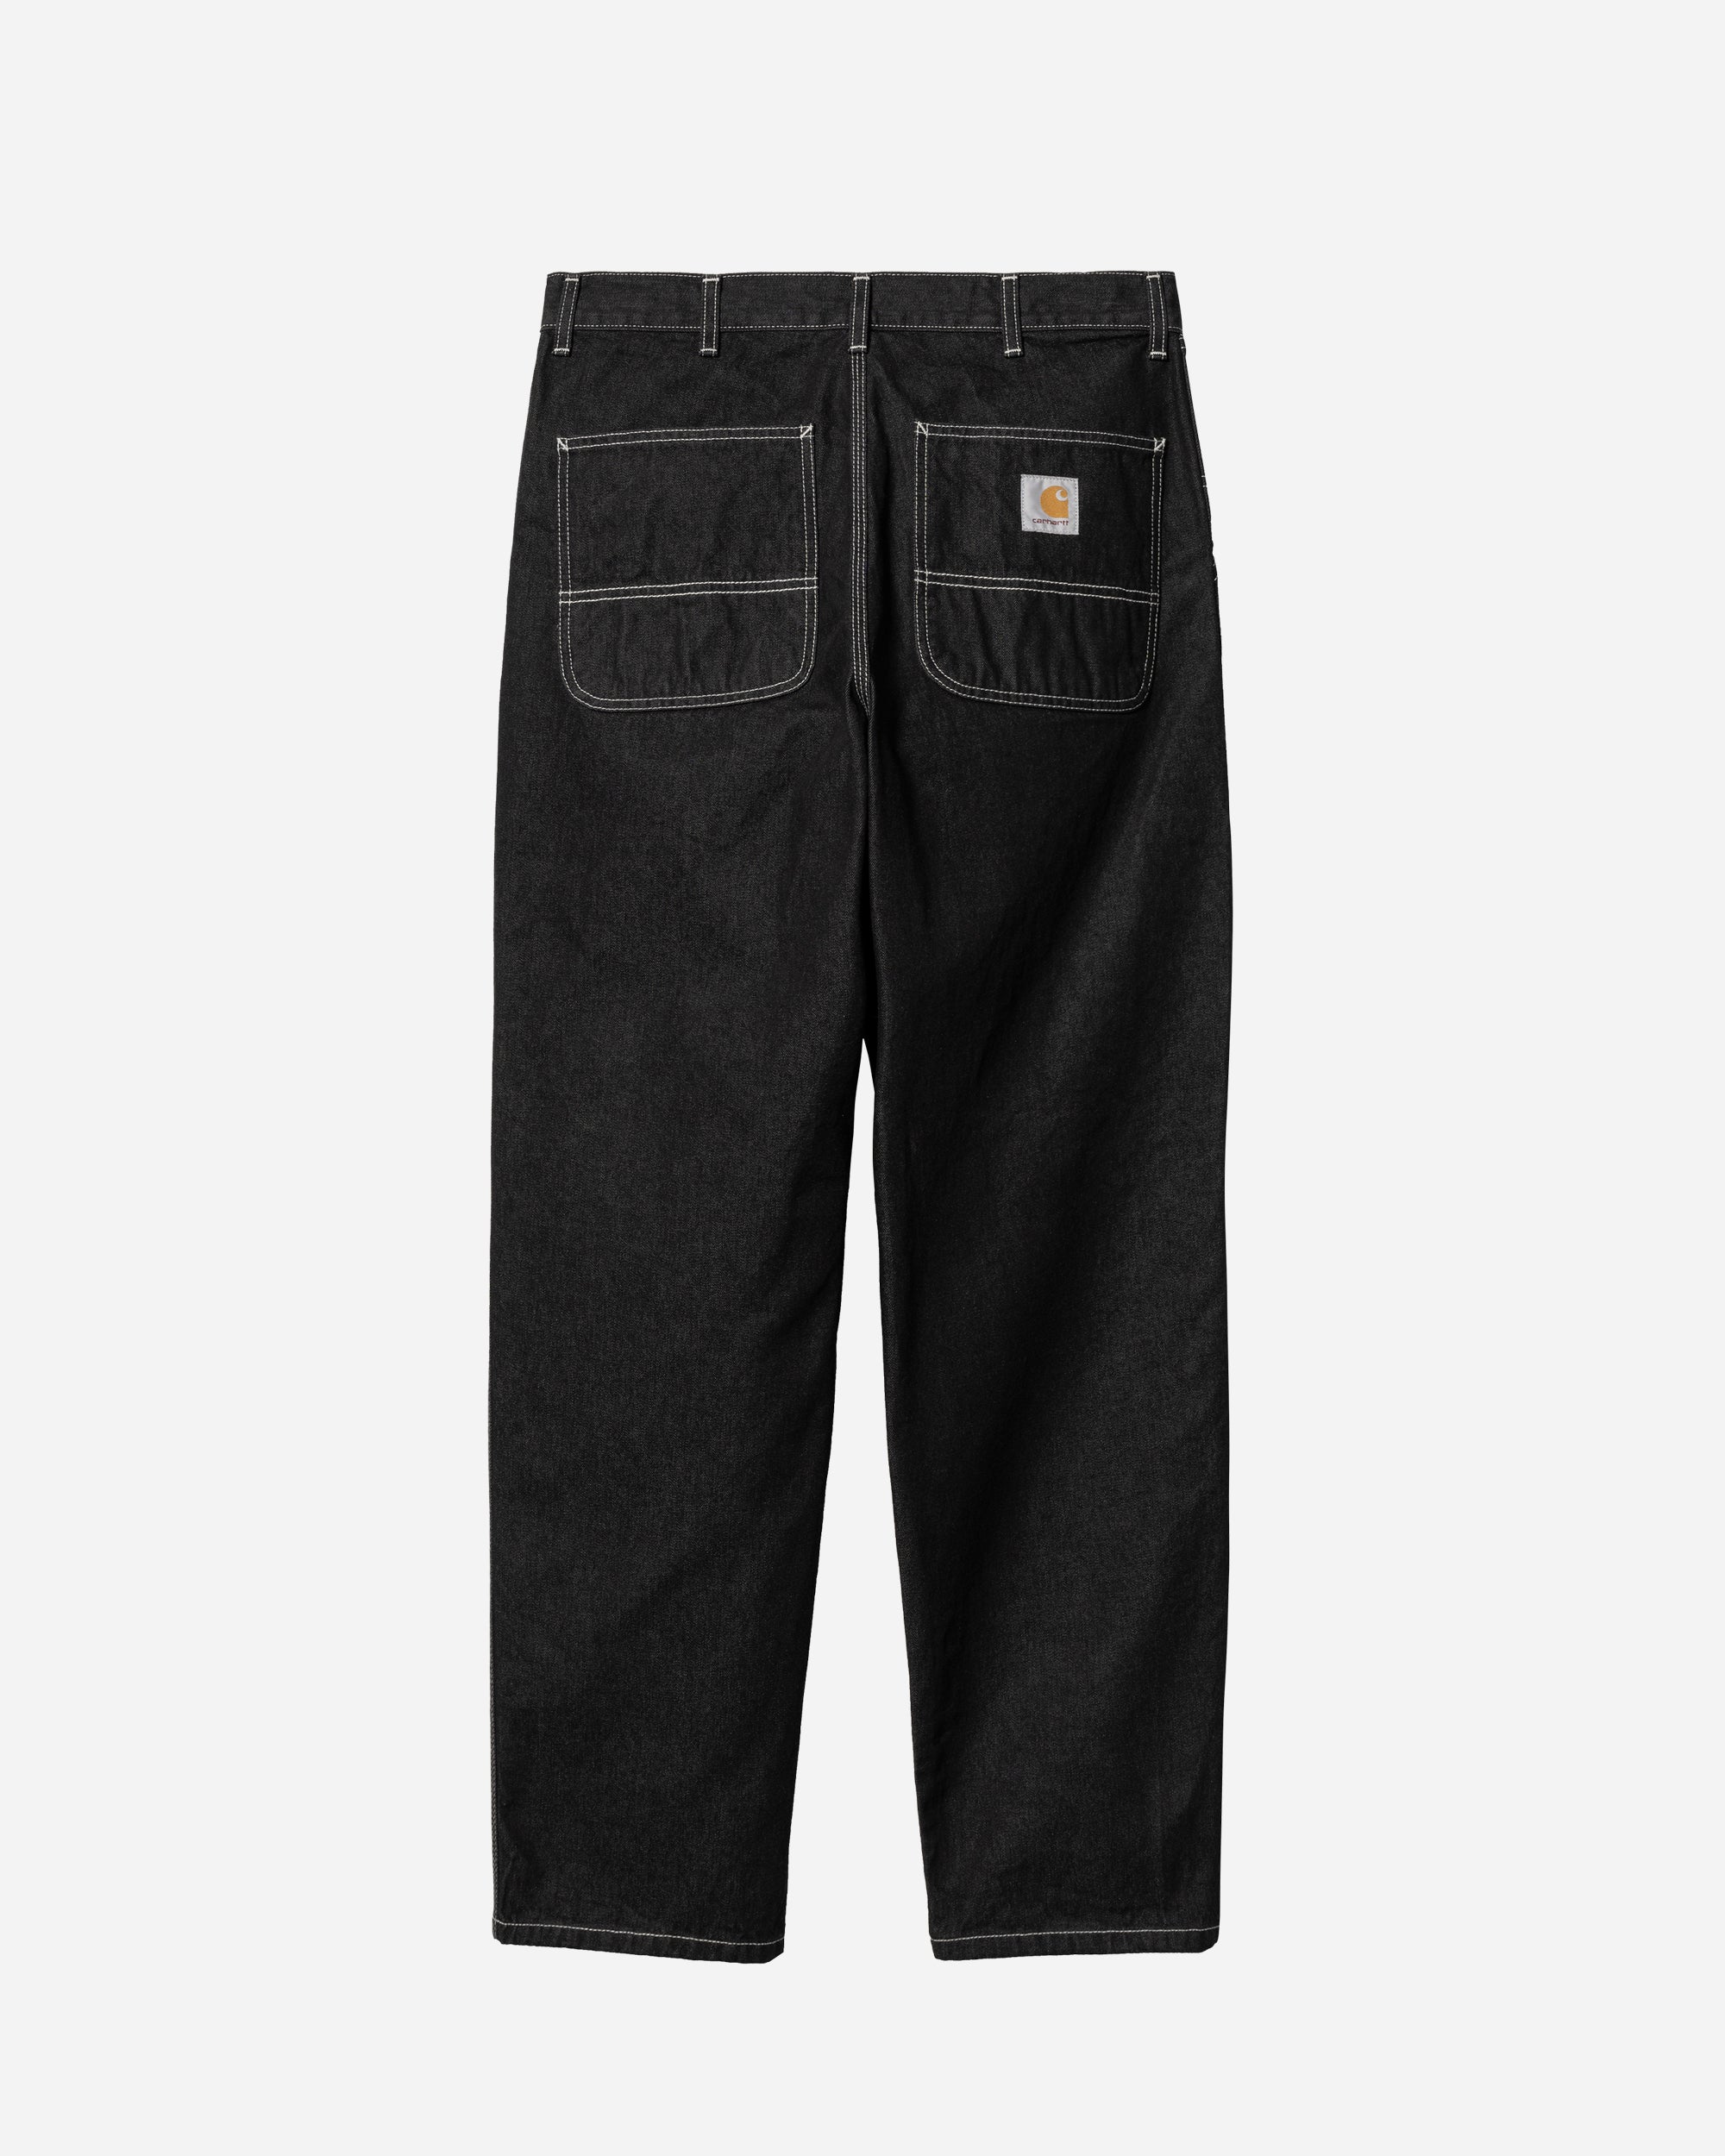 Carhartt WIP Simple Pants Black   I022947-892Y